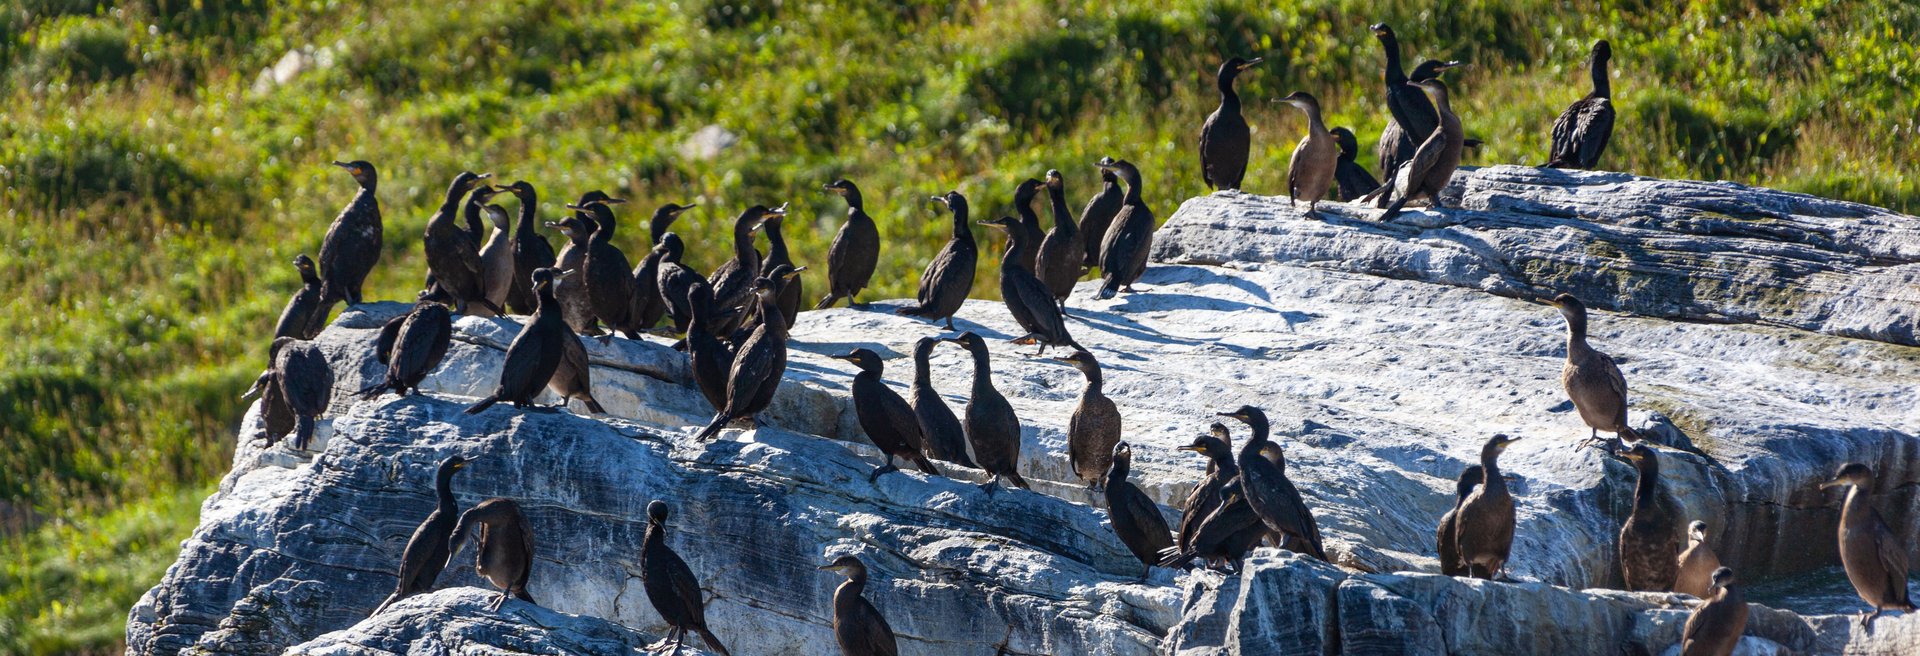 Vogelbeobachtung mit Hurtigruten - Krähenscharben auf Küstenfelsen